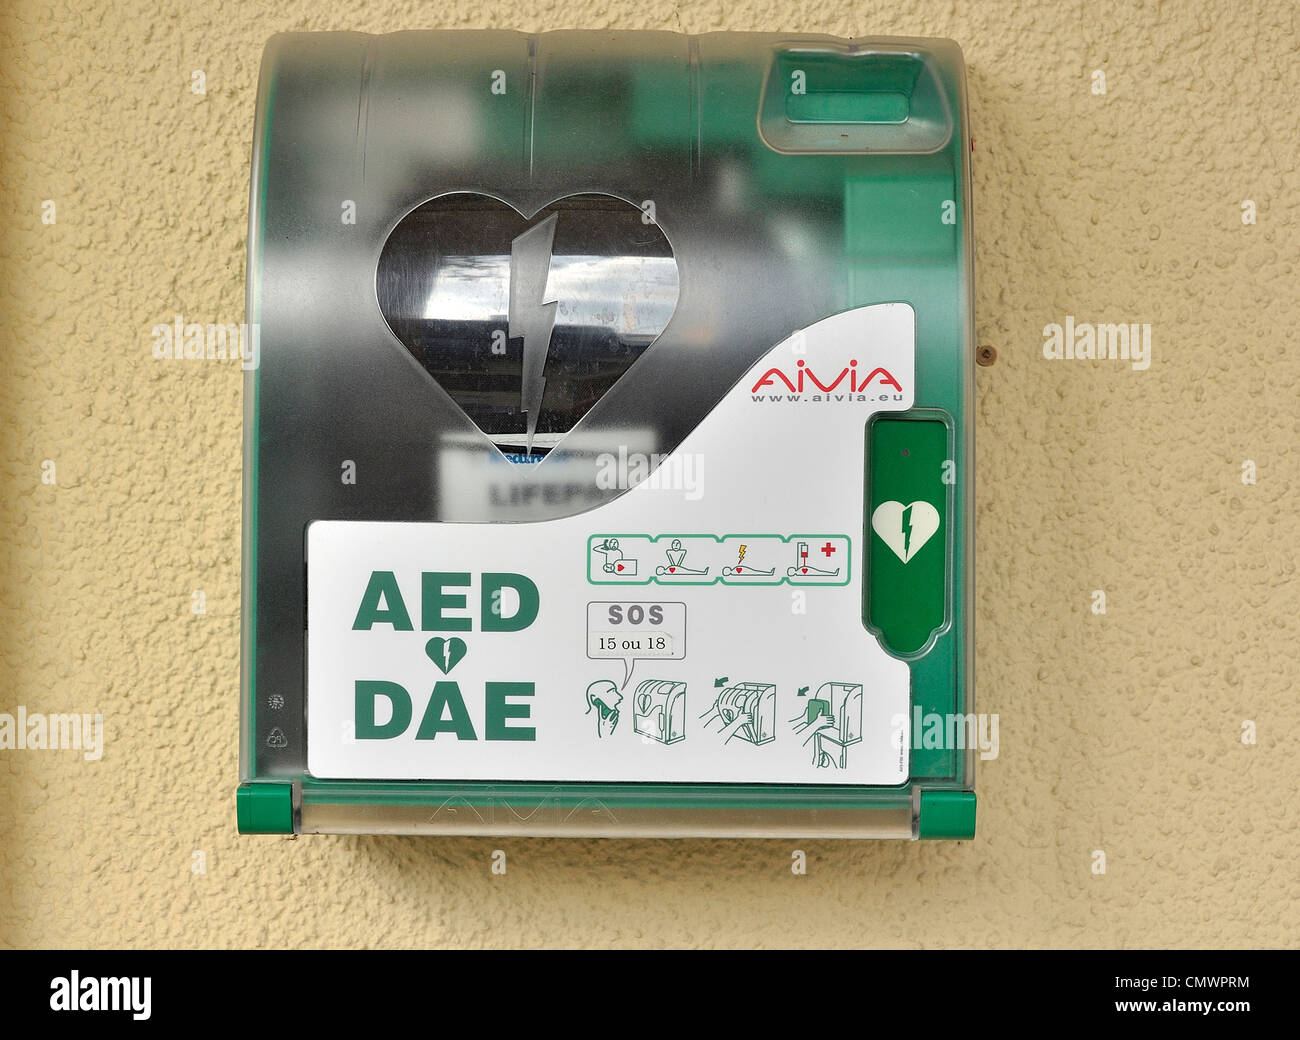 Defibrillatore su un luogo pubblico, apparecchiatura è utilizzata per analizzare la frequenza cardiaca di un arresto cardiaco vittima. Foto Stock